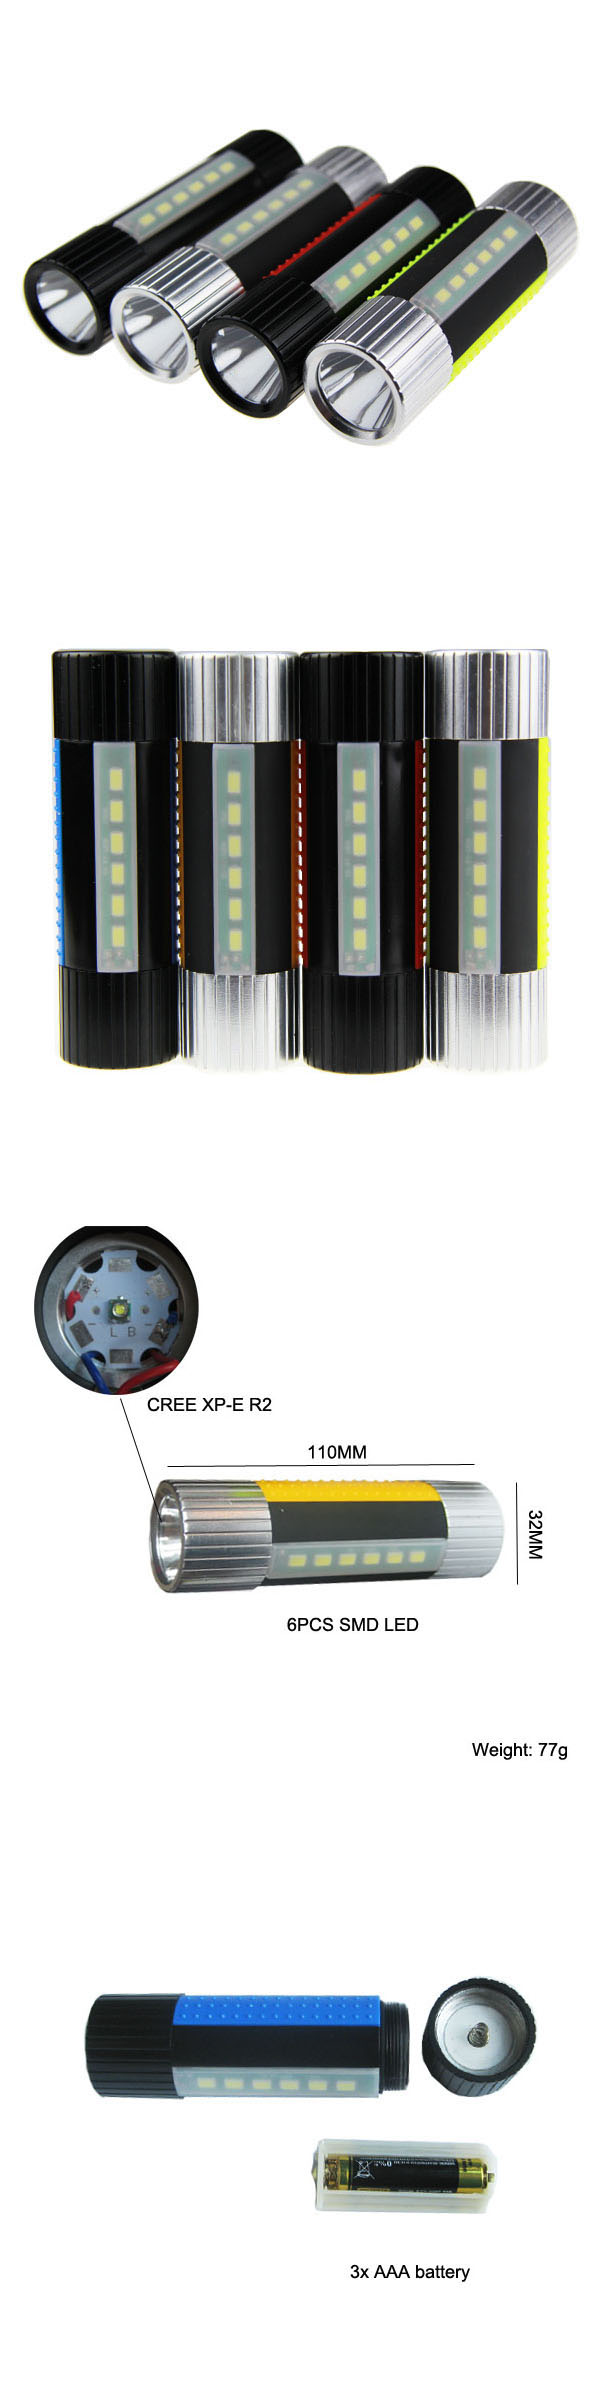 CREE XP-E R2 High Power LED Headlight (POPPAS-S150)